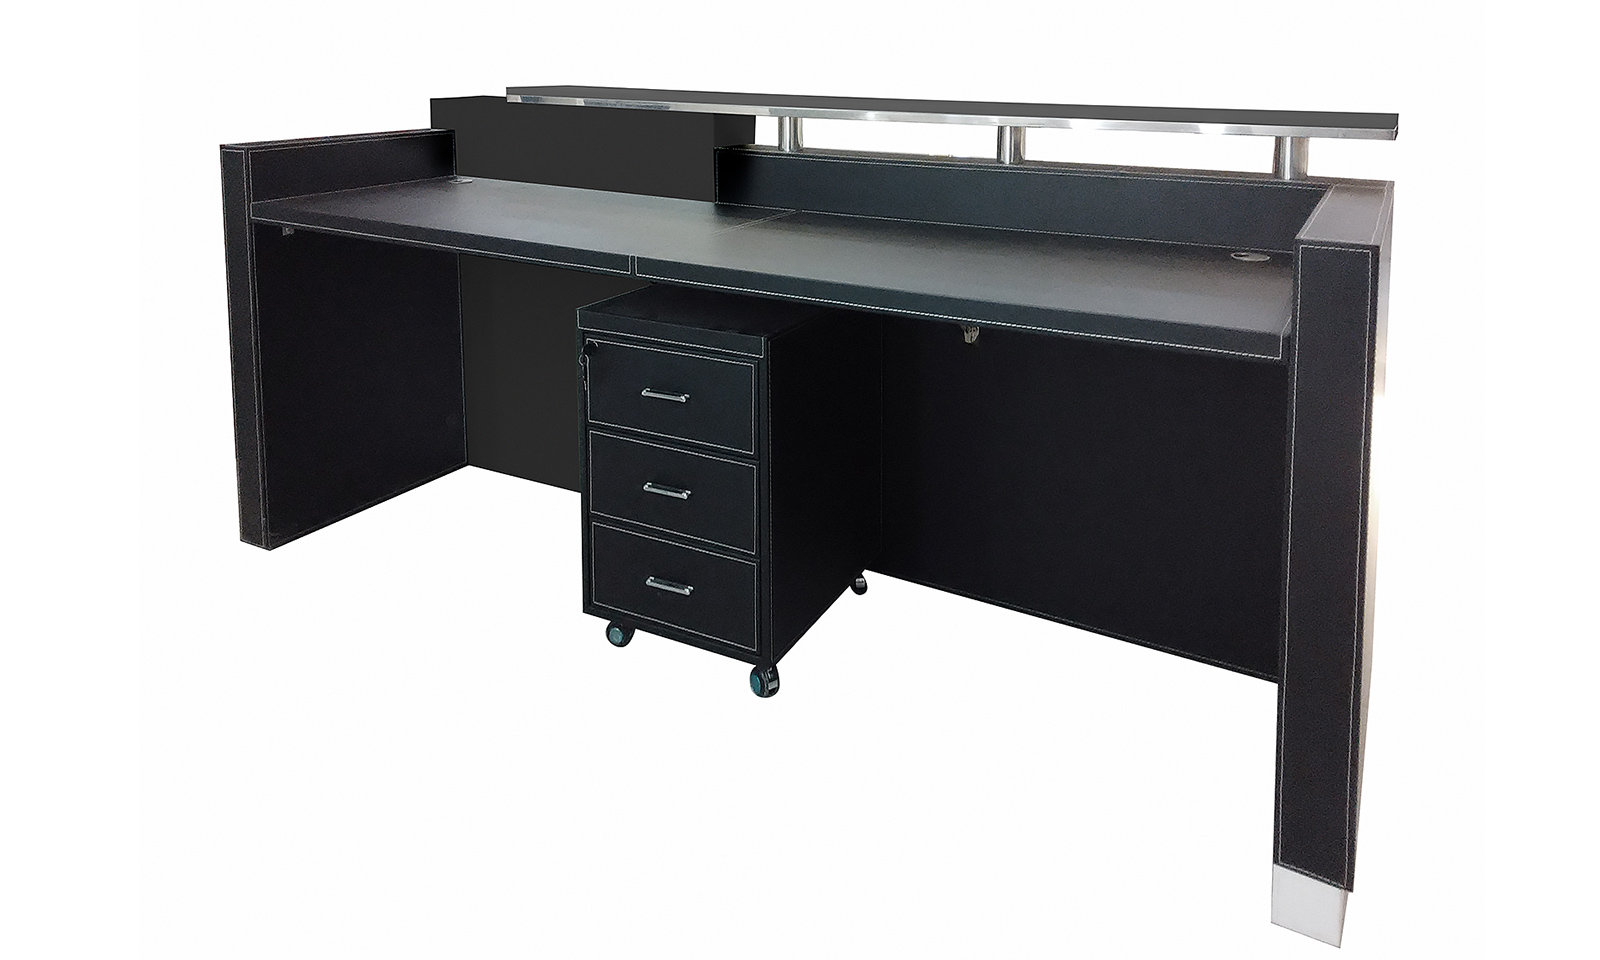 Reception-Desk "Philadelphia", black